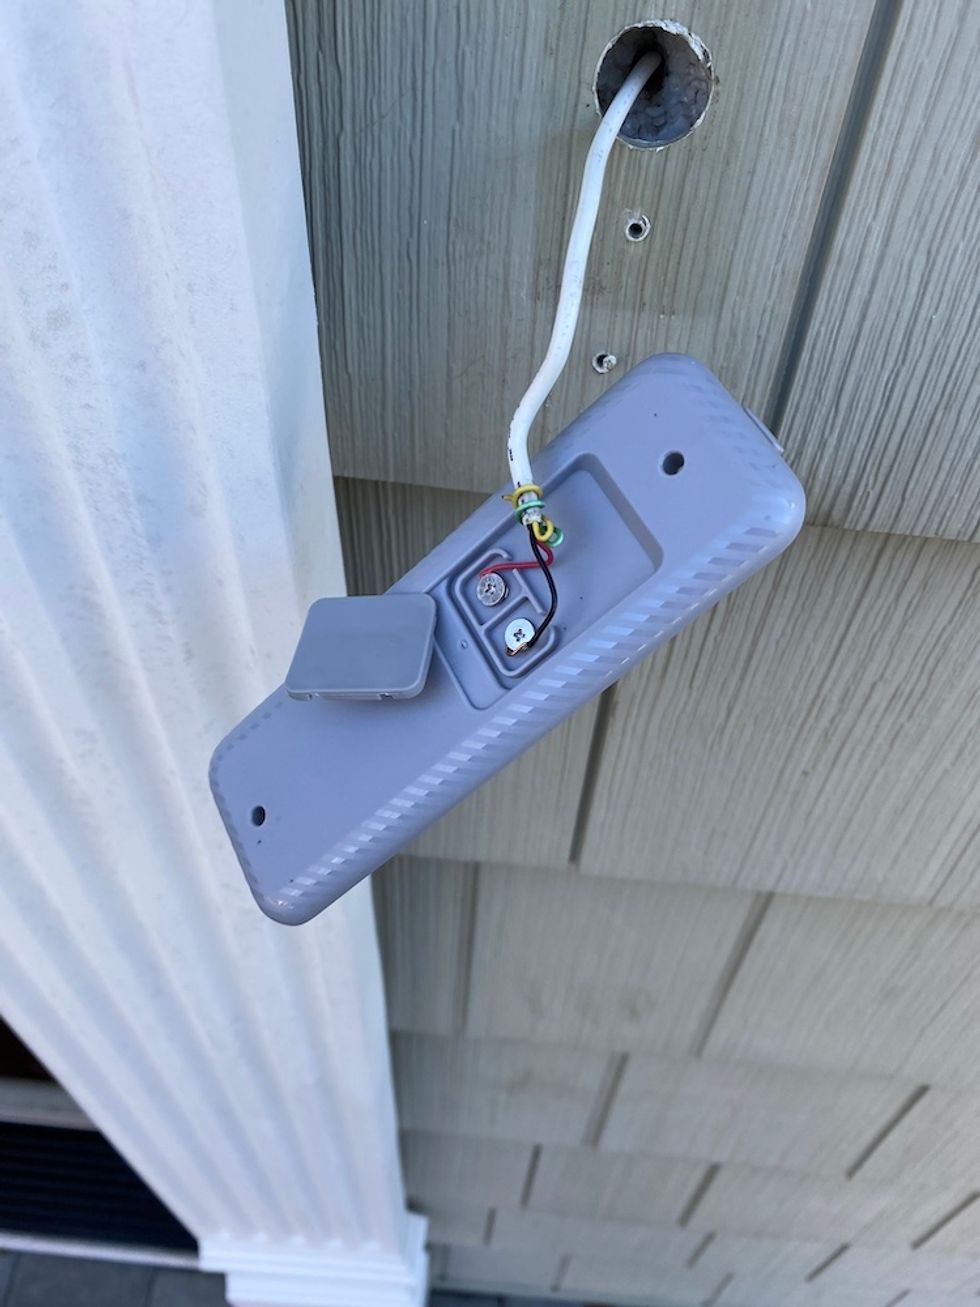 Blue Doorbell Camera mounting bracket connected to doorbell wires.